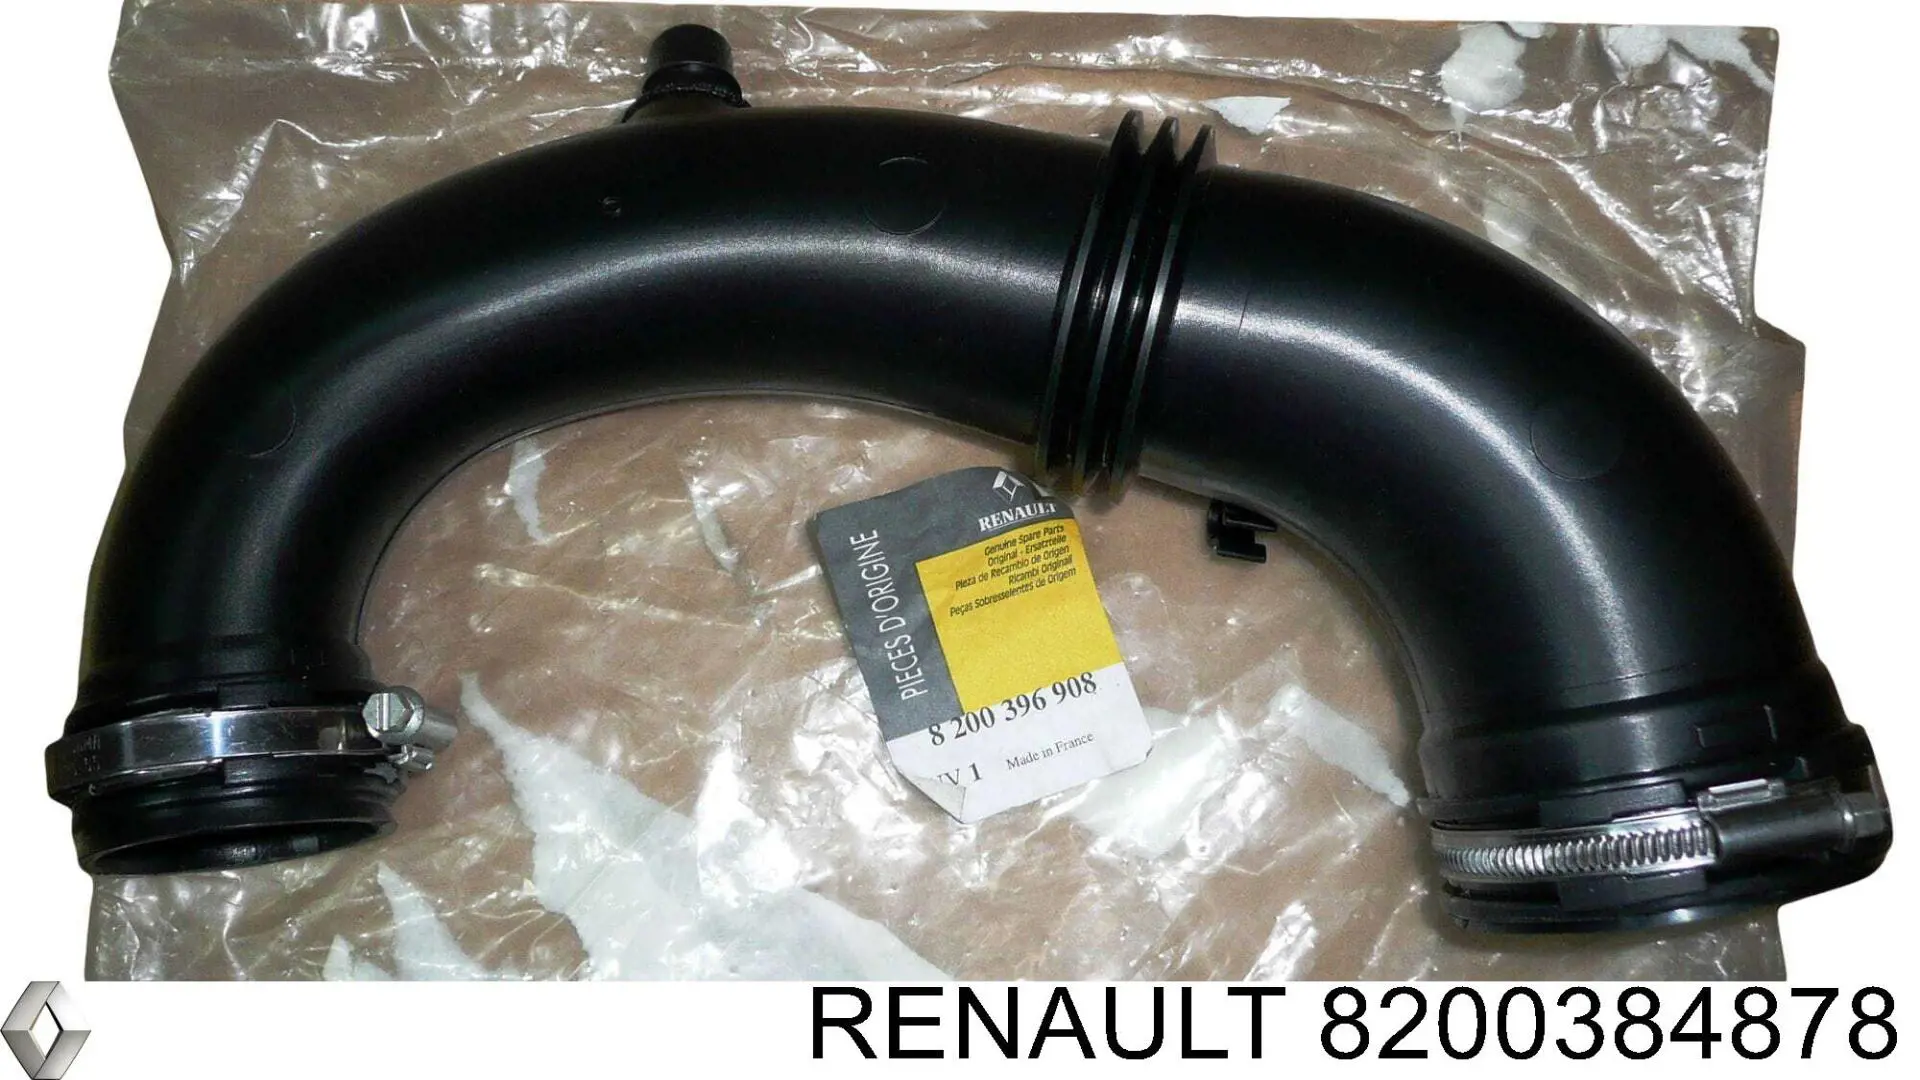 8200384878 Renault (RVI) cano derivado de ar, entrada na turbina (supercompressão)